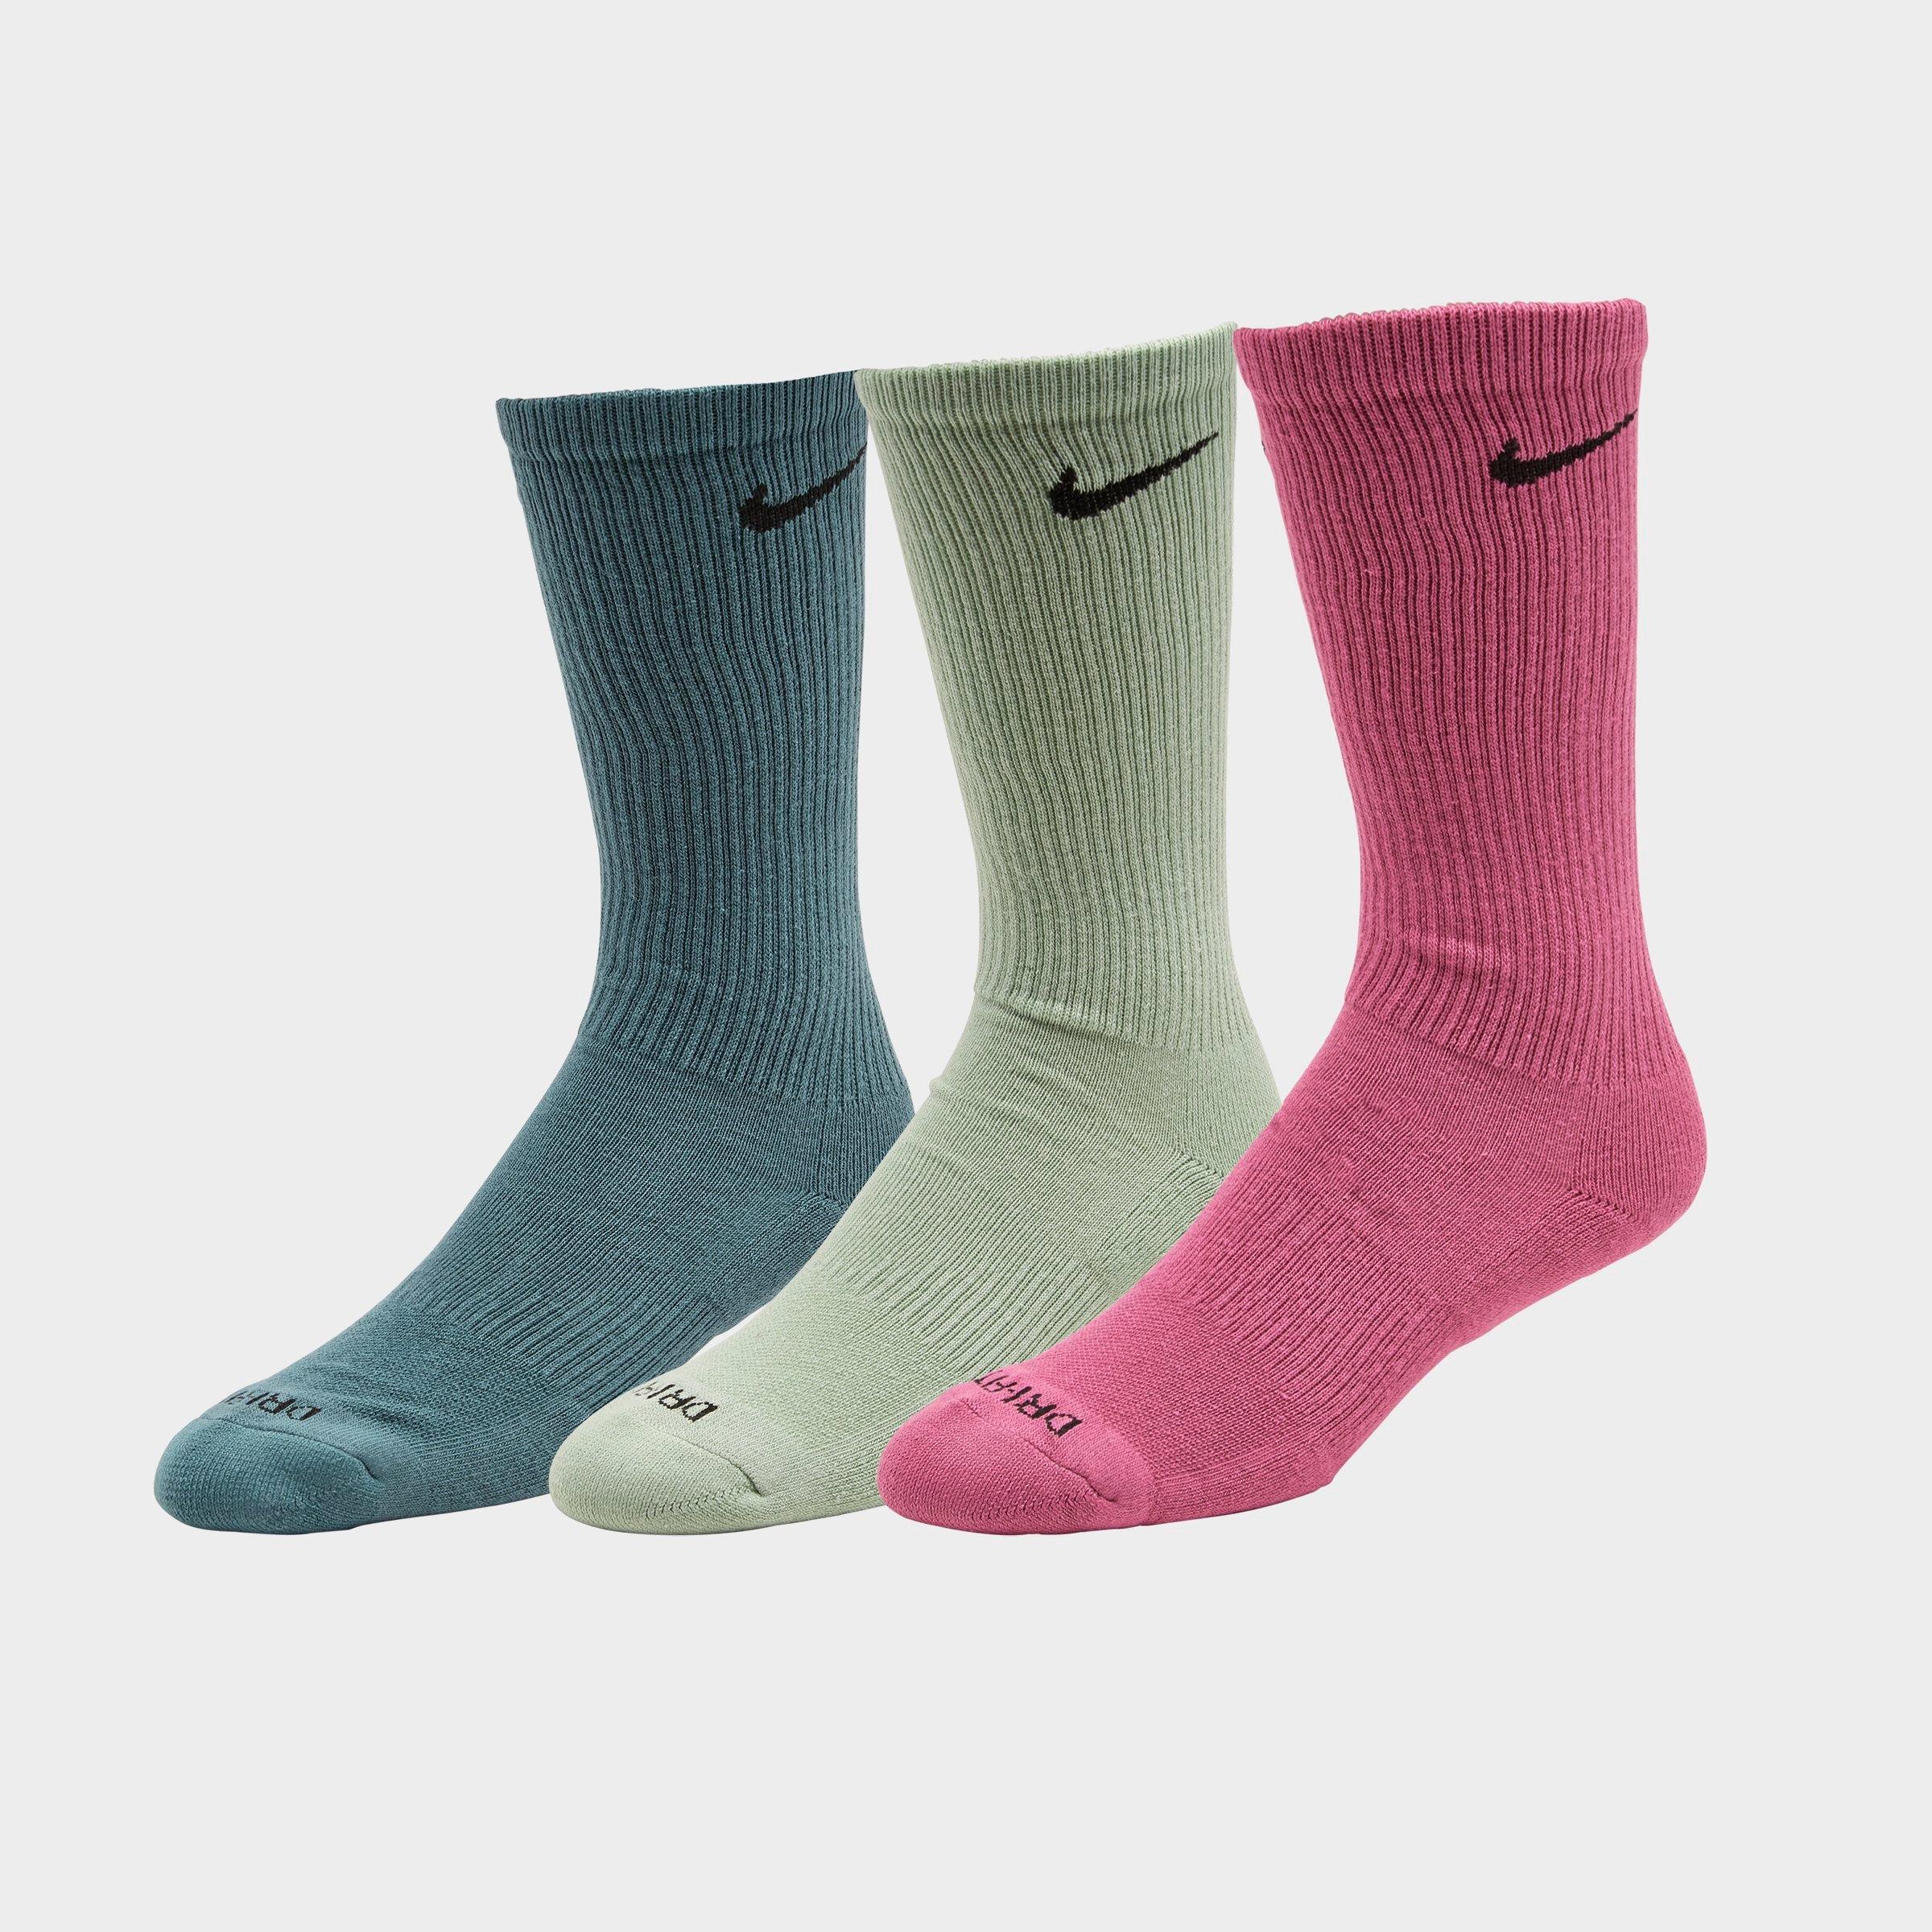 nike front logo socks